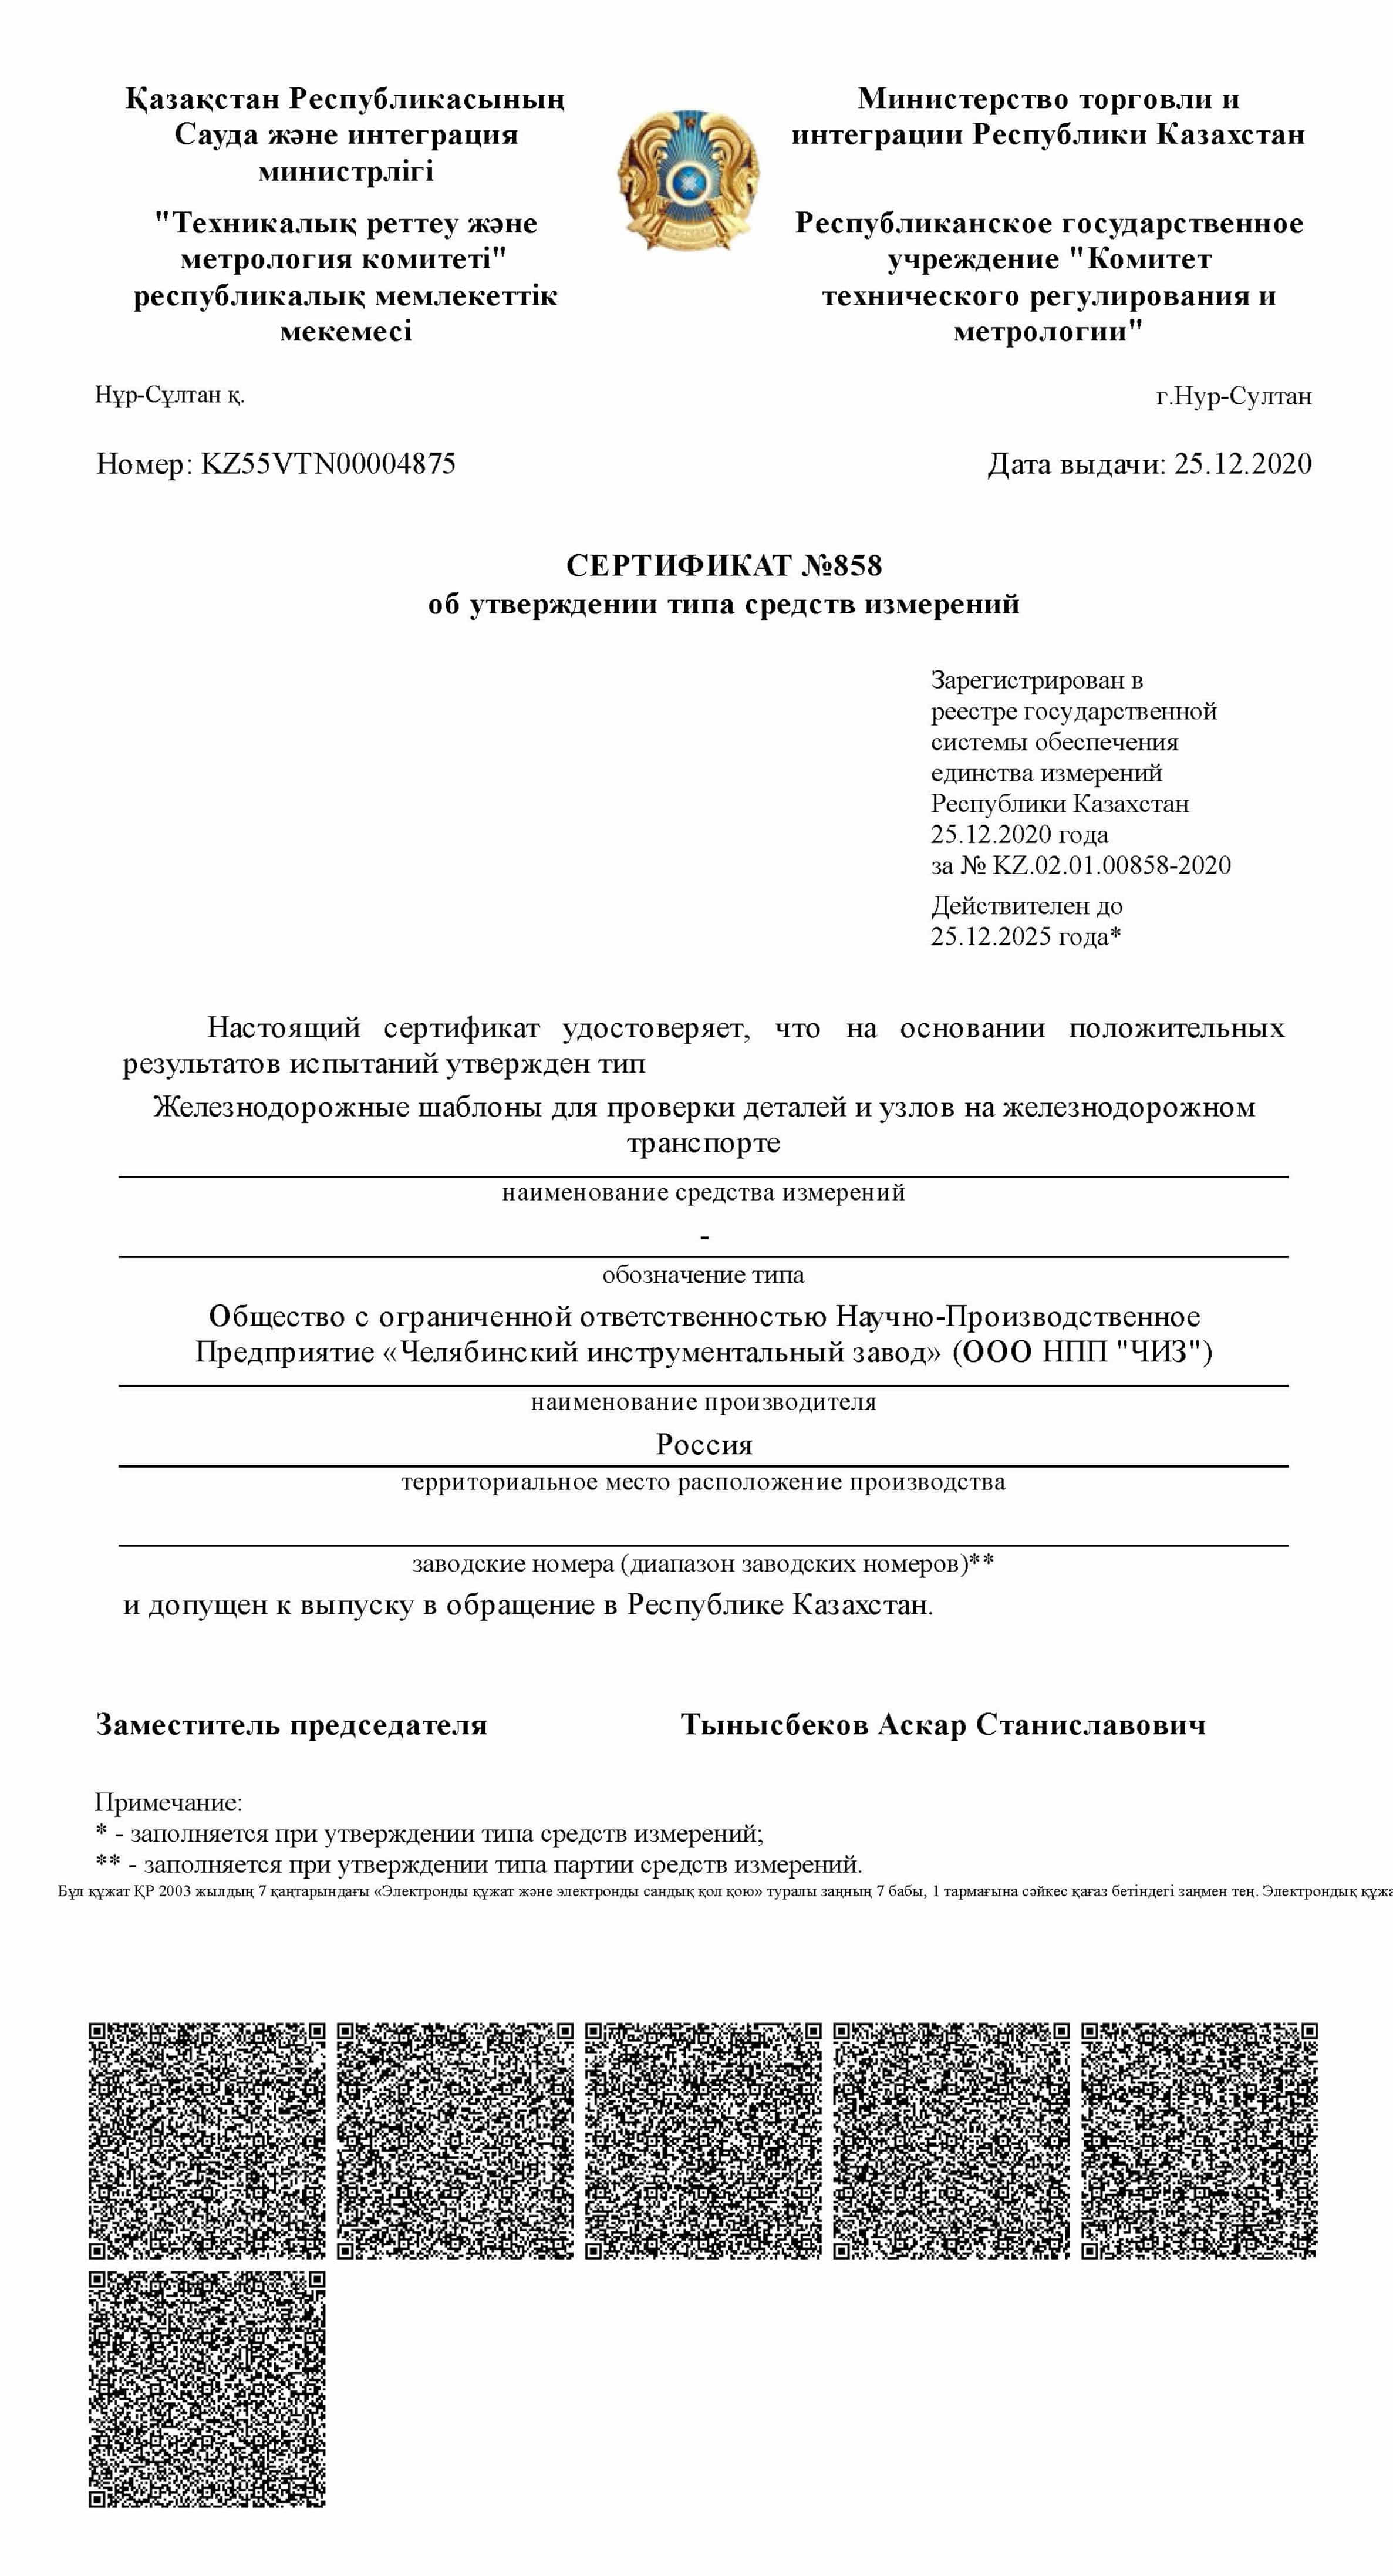 Сертификат ЖД Казахстан